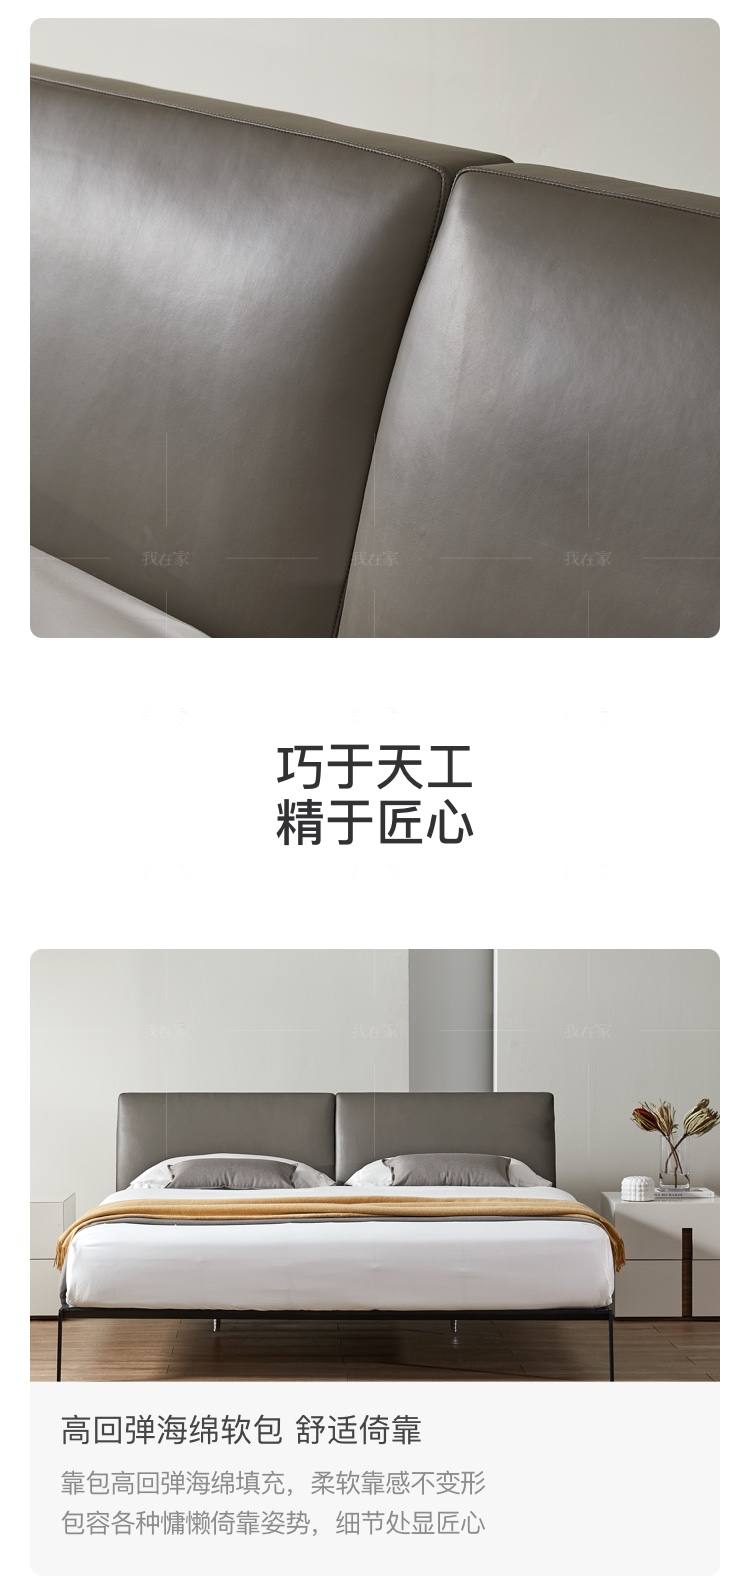 意式极简风格流苏双人床的家具详细介绍